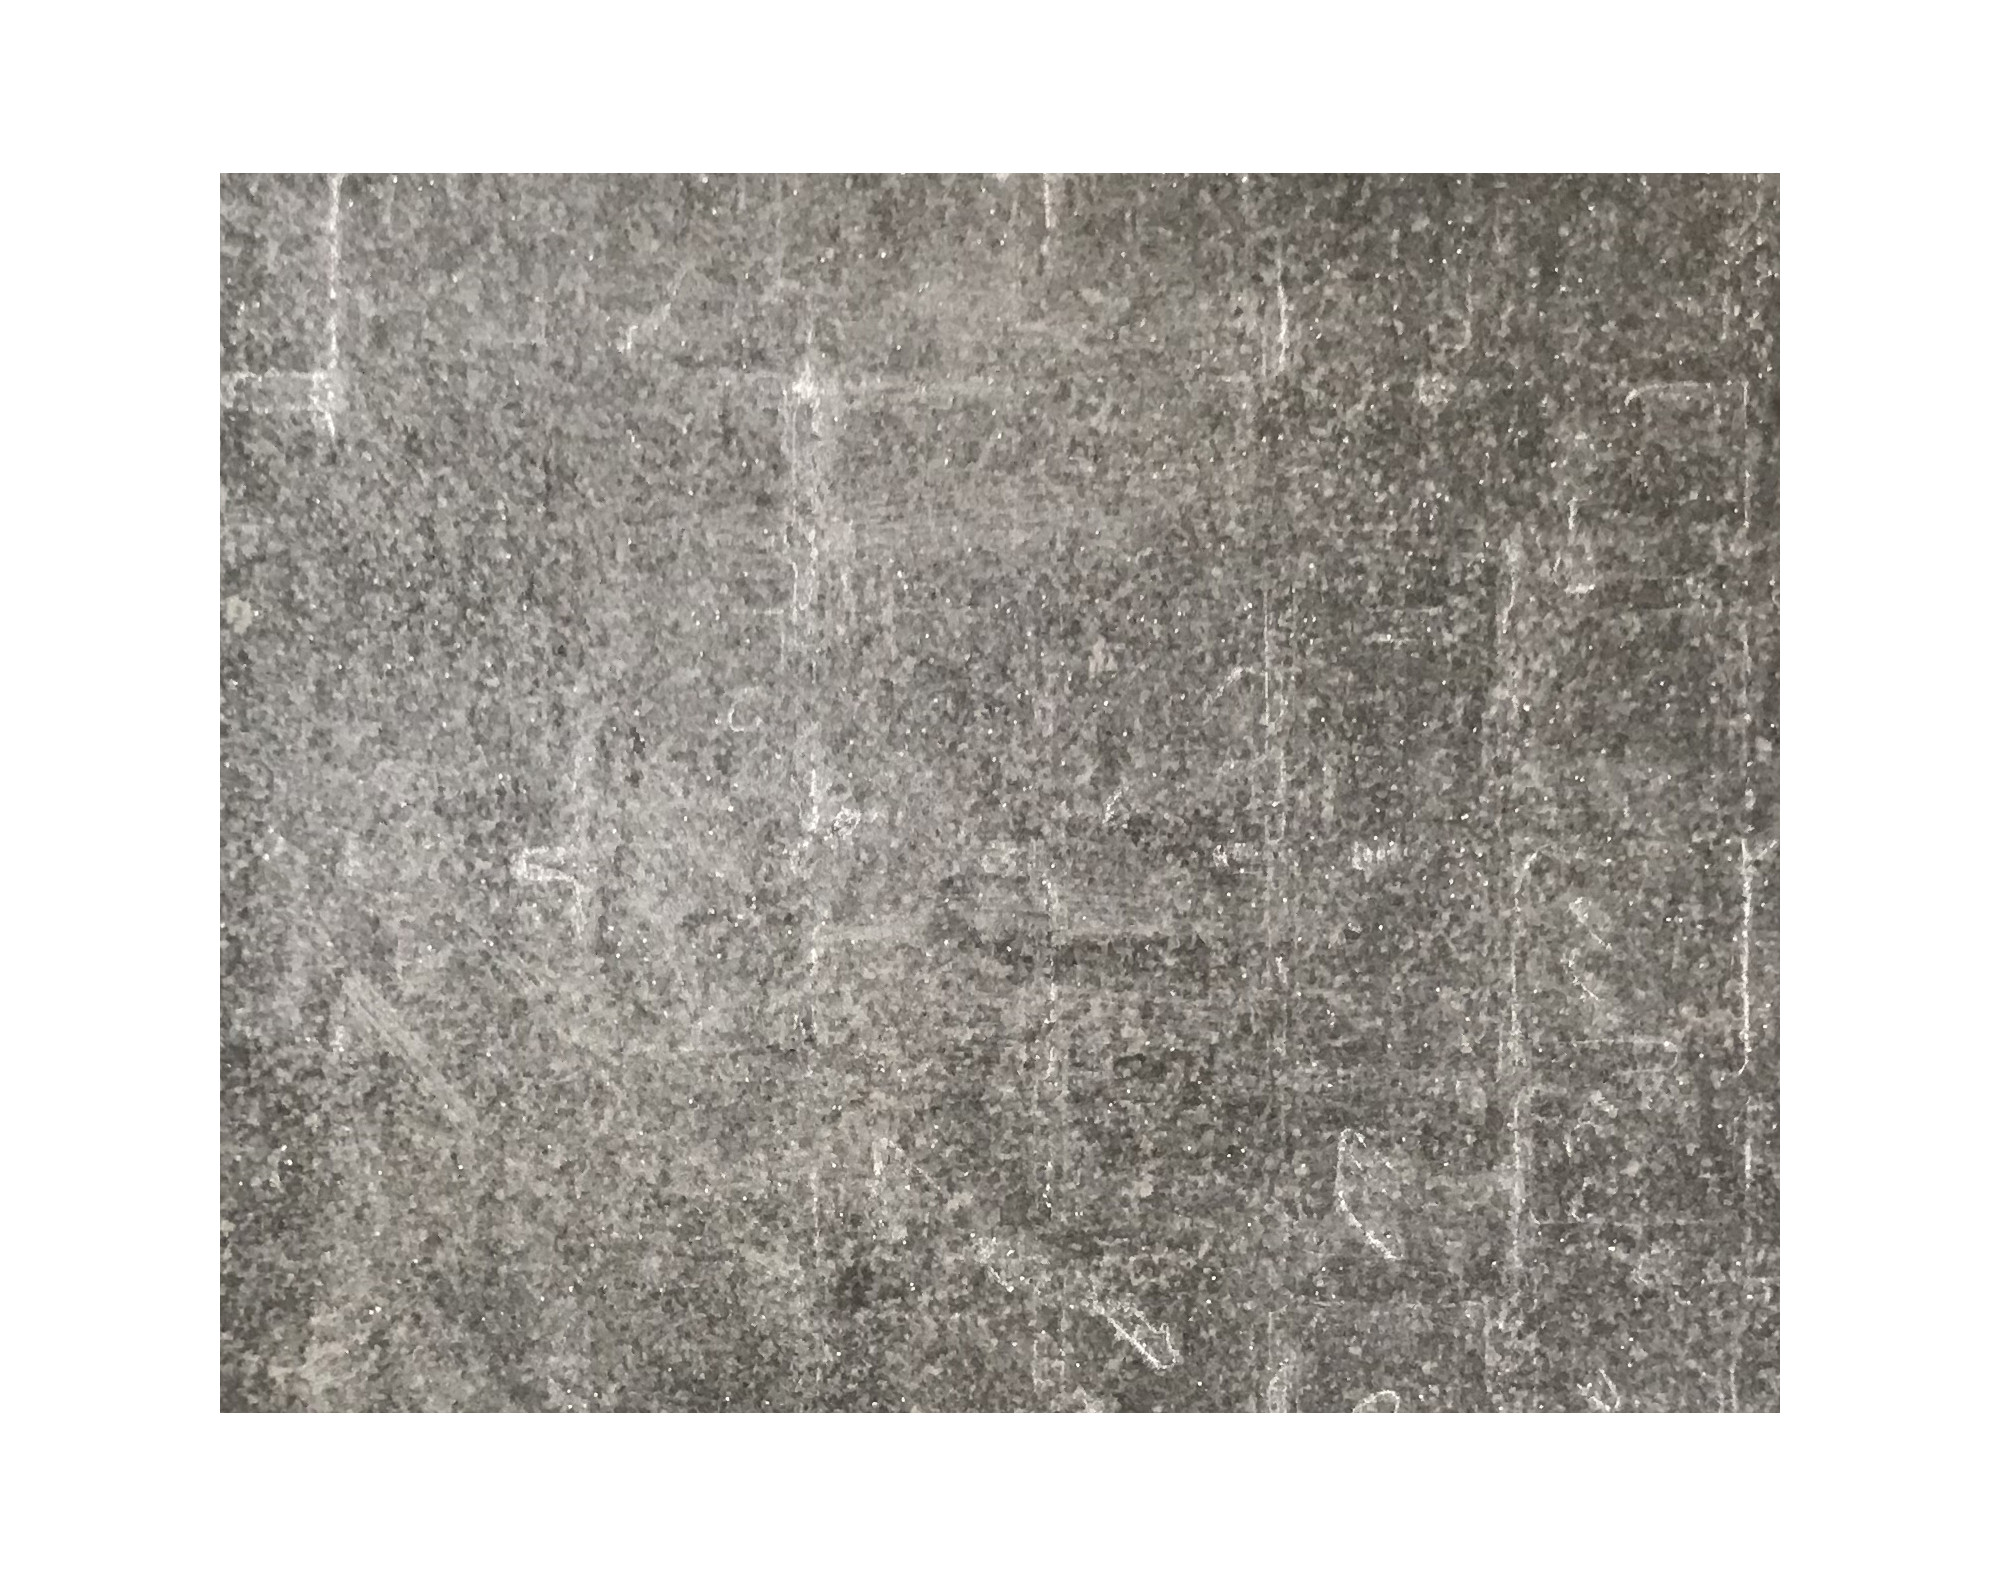 Harmo roc maranelloset, keramiek-serie, ovaal d: 4,20mx8,20m, zand zwart, keramisch porselein